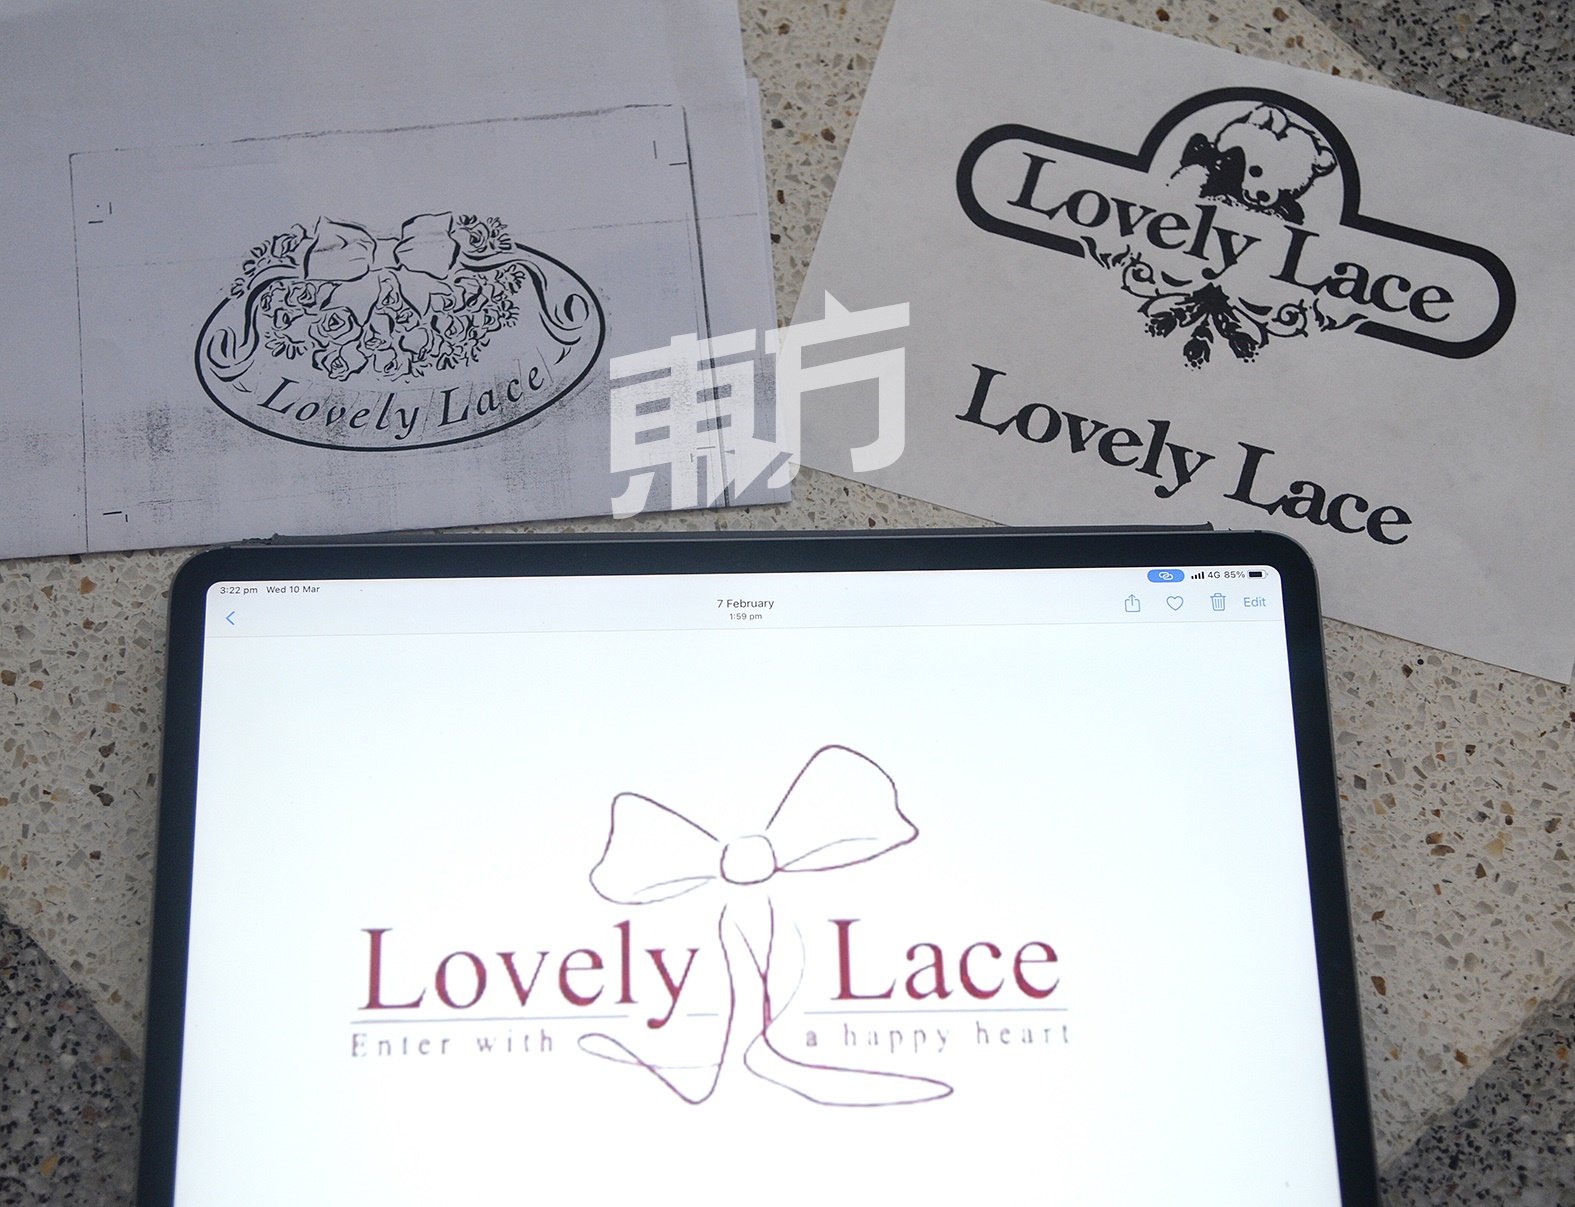 随著潮流趋势的变化，Lovely Lace的商标已经来到第三代，更为简练、鲜明。